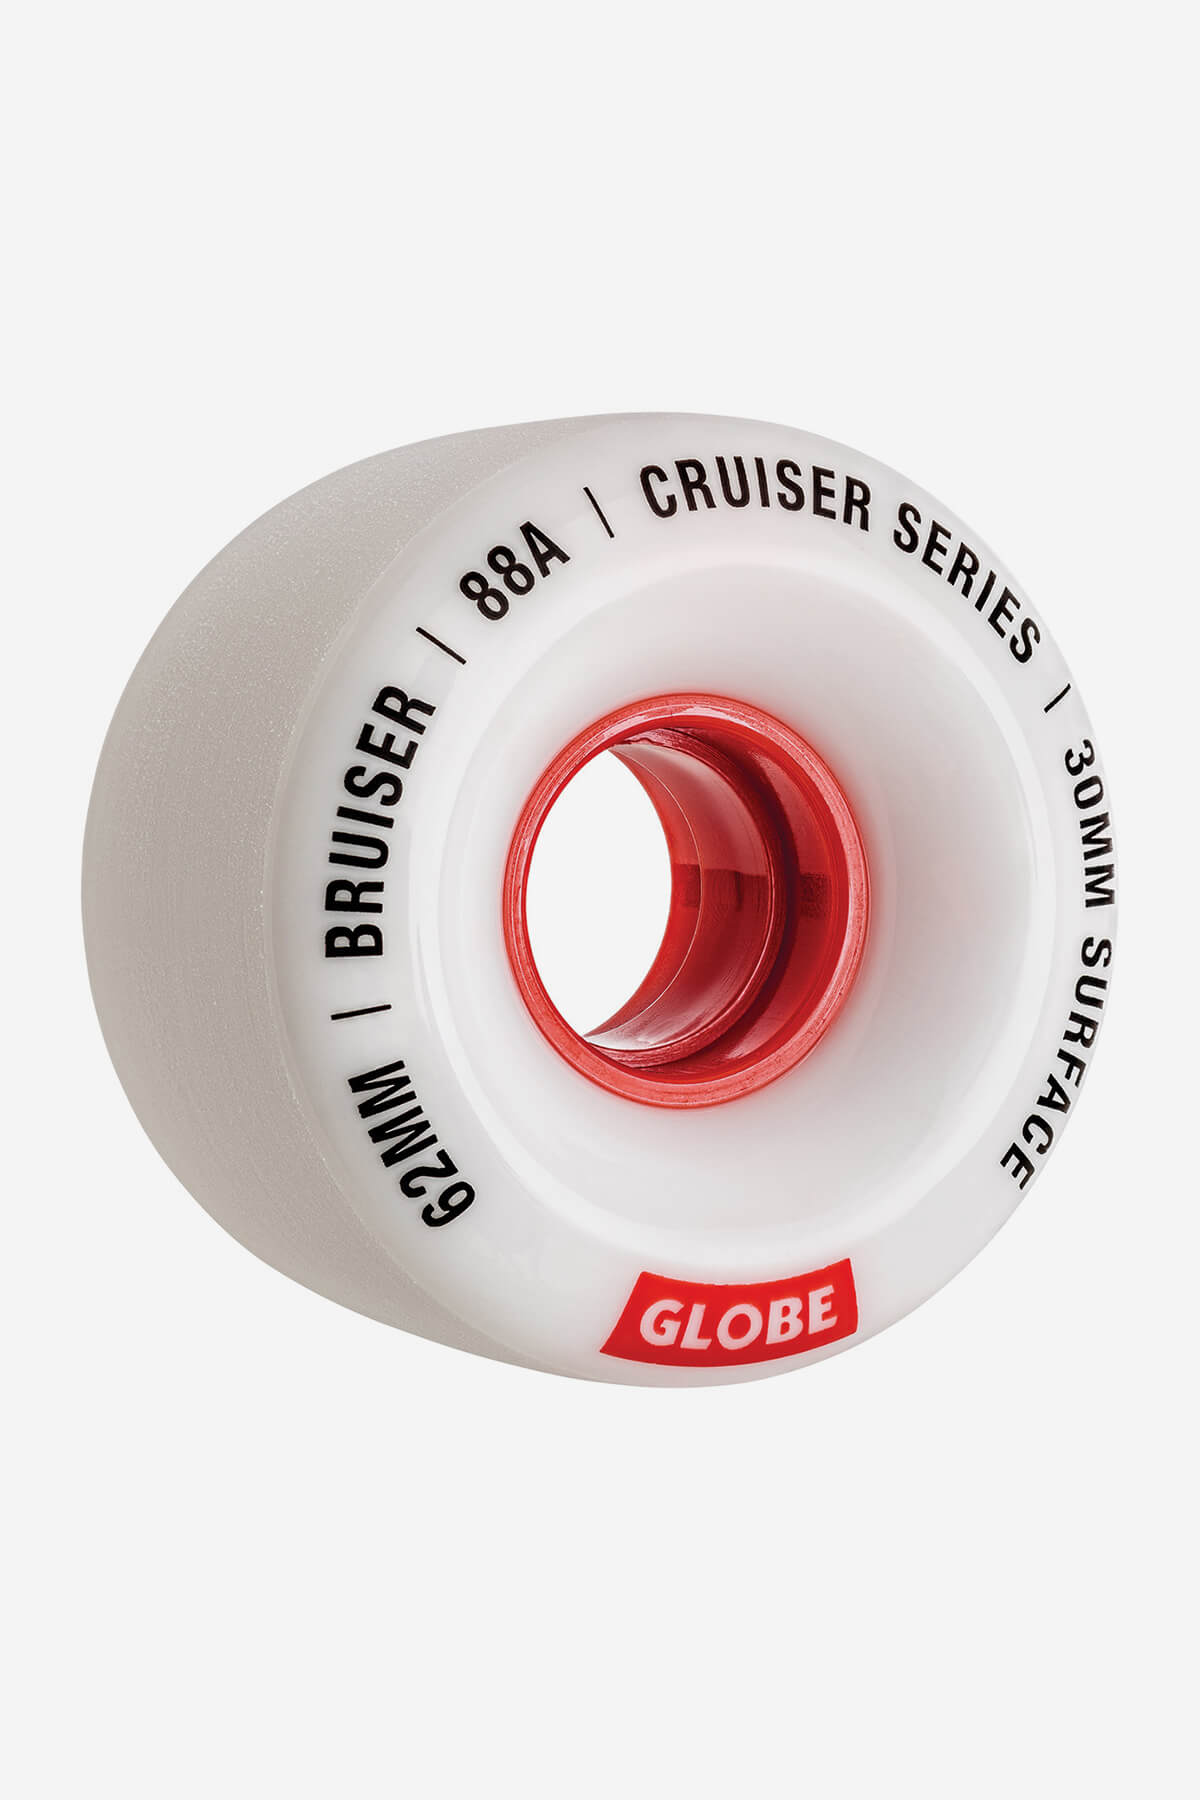 Globe Rollen Bruiser Cruiser Skateboard  Wheel  62mm in White/Red/62